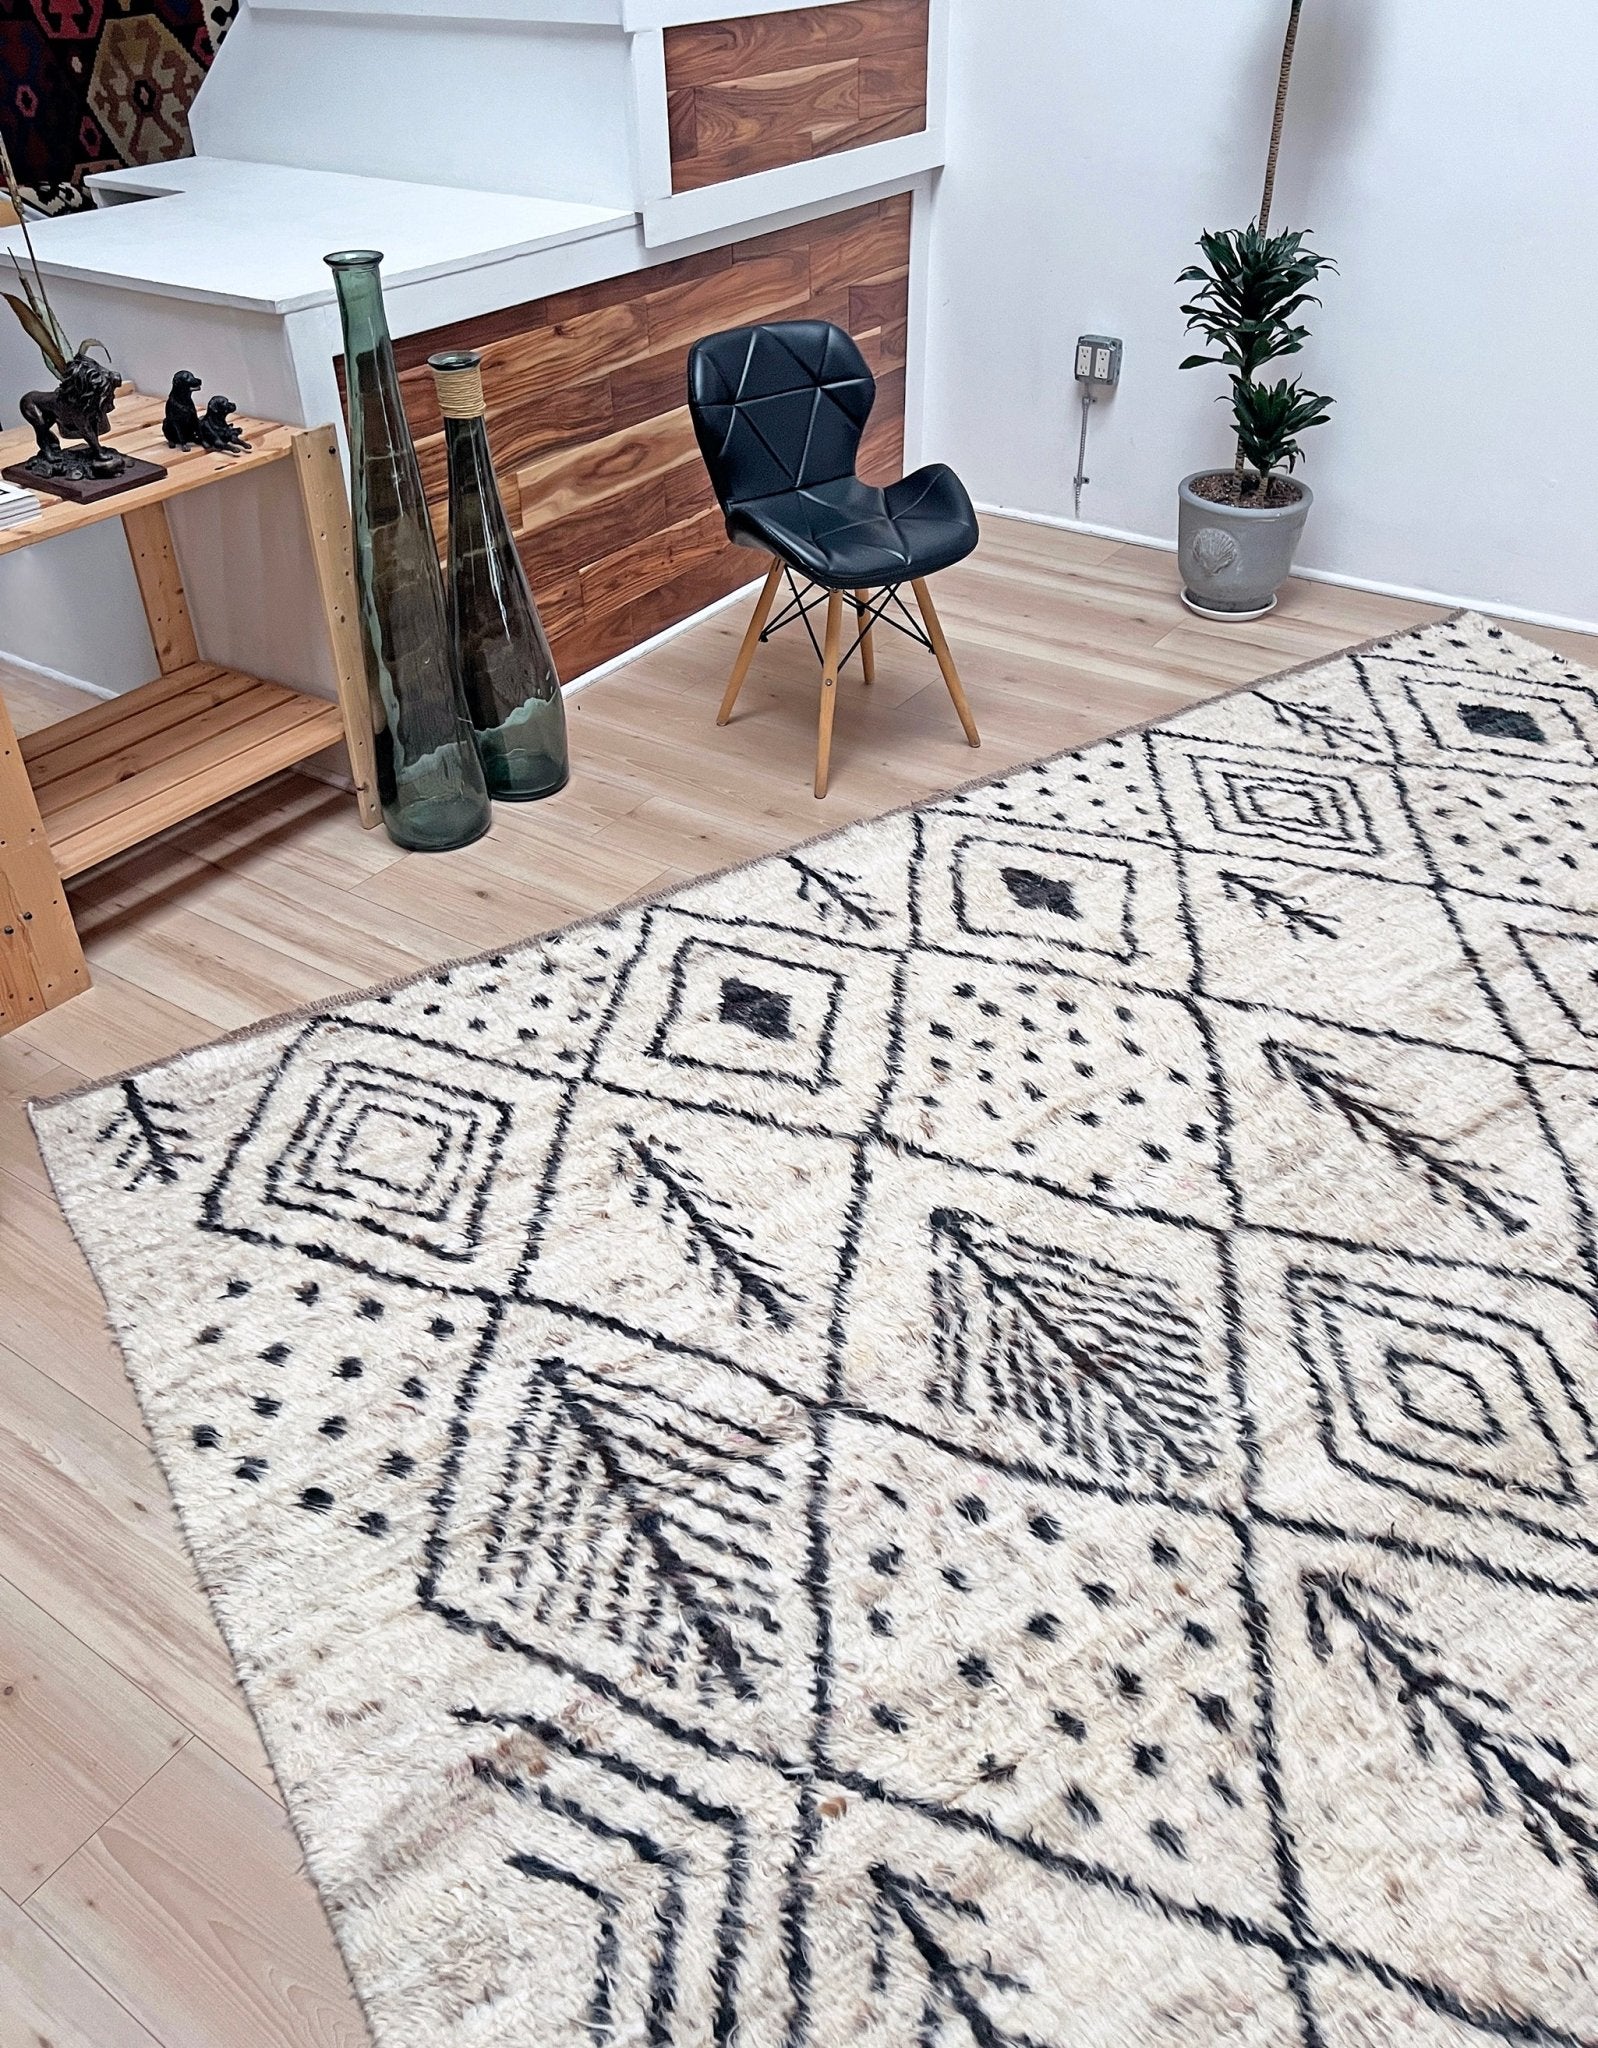 Moroccan Shag minimalist rug wool handmade 10x14 large area rug. Rug shop San Francisco Bay Area. Buy rug online.